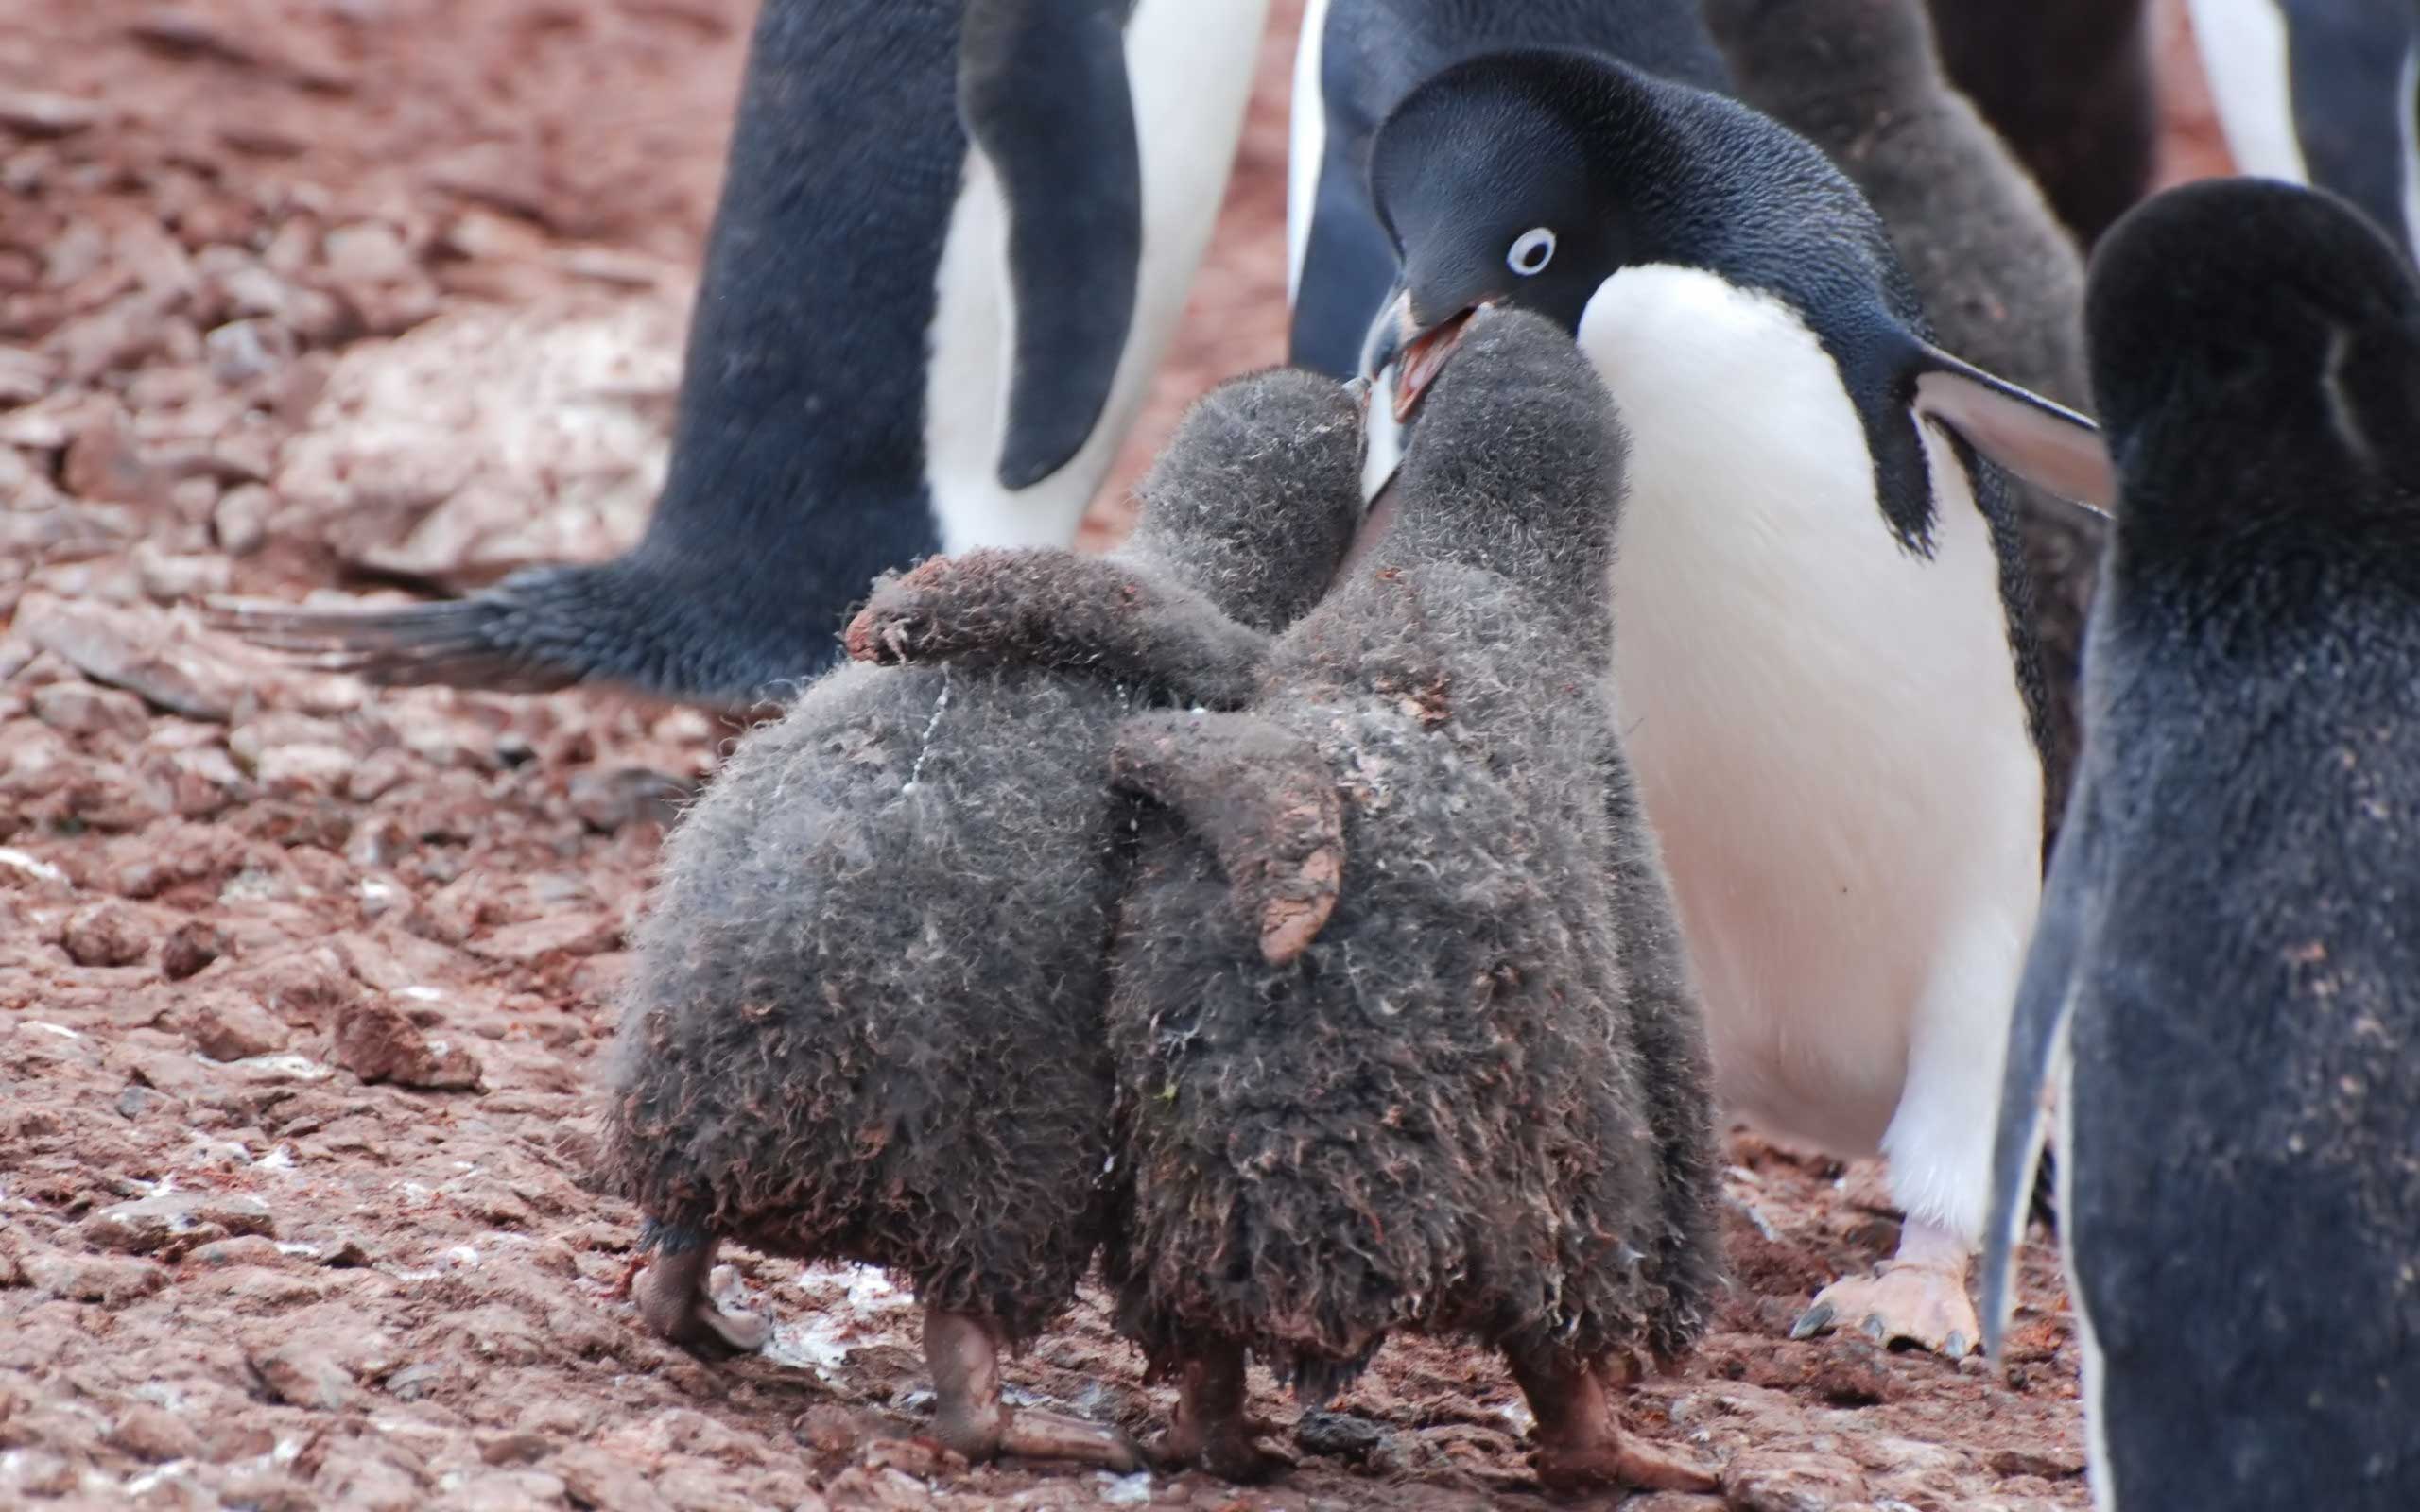 Dahası, soğuktan korunmak amacıyla, kümeler halinde toplanarak birbirine adeta yapışan 400 bin üyeli penguen topluluğu mükemmel bir dayanışma örneği sergiler. Aldıkları bu önlemle soğuktan donarak ölmekten kurtulurlar. Kümenin dışında kalanları da sırayla aralarına alarak onların da ısınmalarını sağlarlar. Penguenler, aralarındaki düzeni bozabilecek en ufak bir itiraz olmadan, nesiller boyu büyük bir uyum içinde yaşamıştır ve aynı düzen içinde yaşamaya devam etmektedirler.